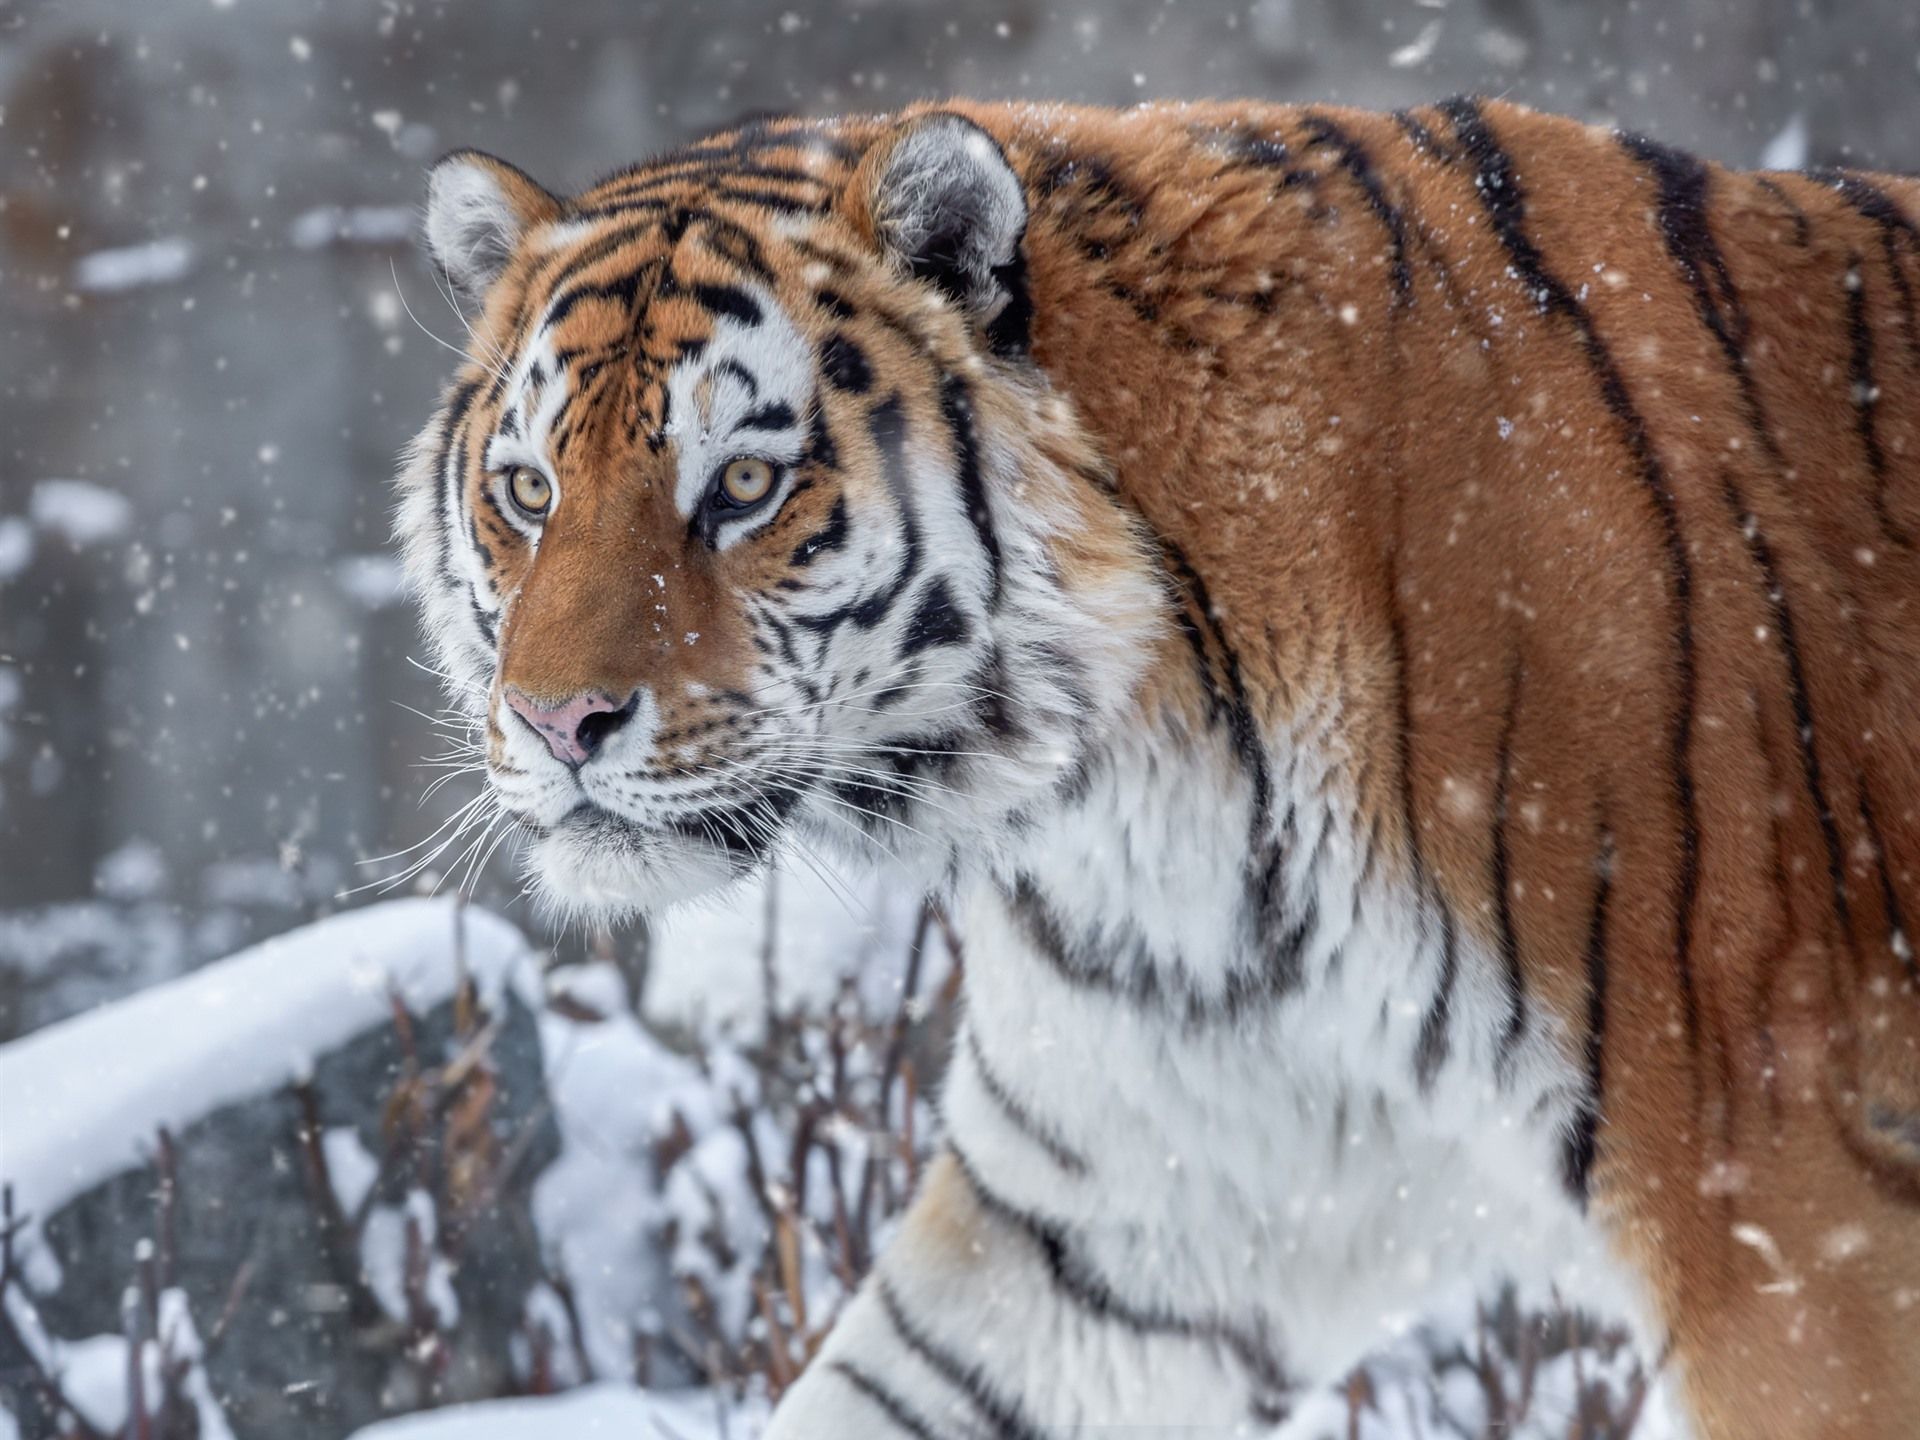  Winter Tiere Hintergrundbild 1920x1440. Tiger im Winter, Schnee, Gesicht, wild lebende Tiere 1920x1440 HD Hintergrundbilder, HD, Bild